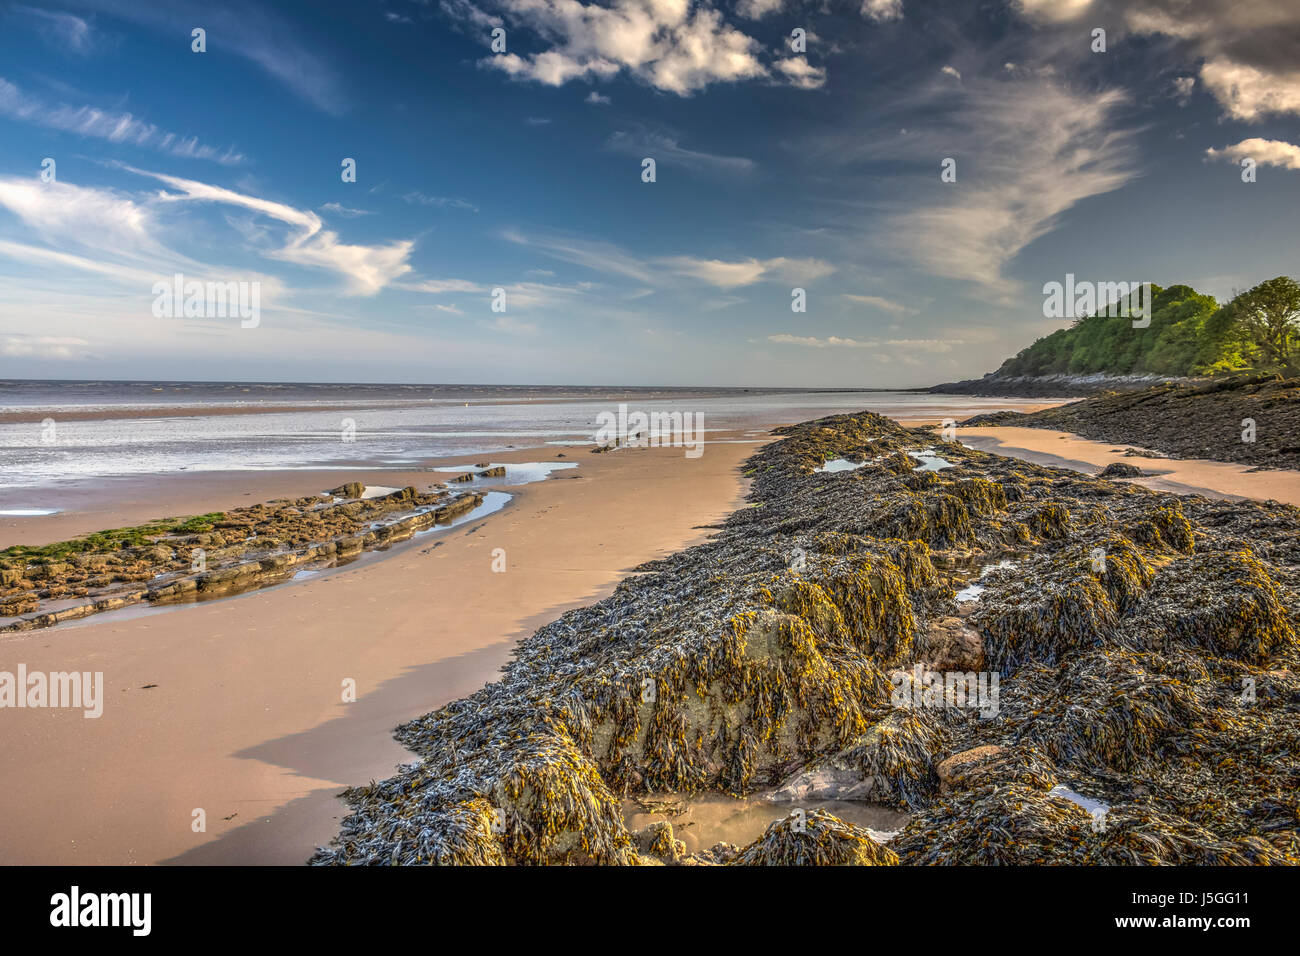 HDR-Bild auf den Strand und Algen bedeckt Gesteine sowie eine Wabe Wurm Riff bei Powillimount, Dumfries and Galloway, Schottland. Stockfoto